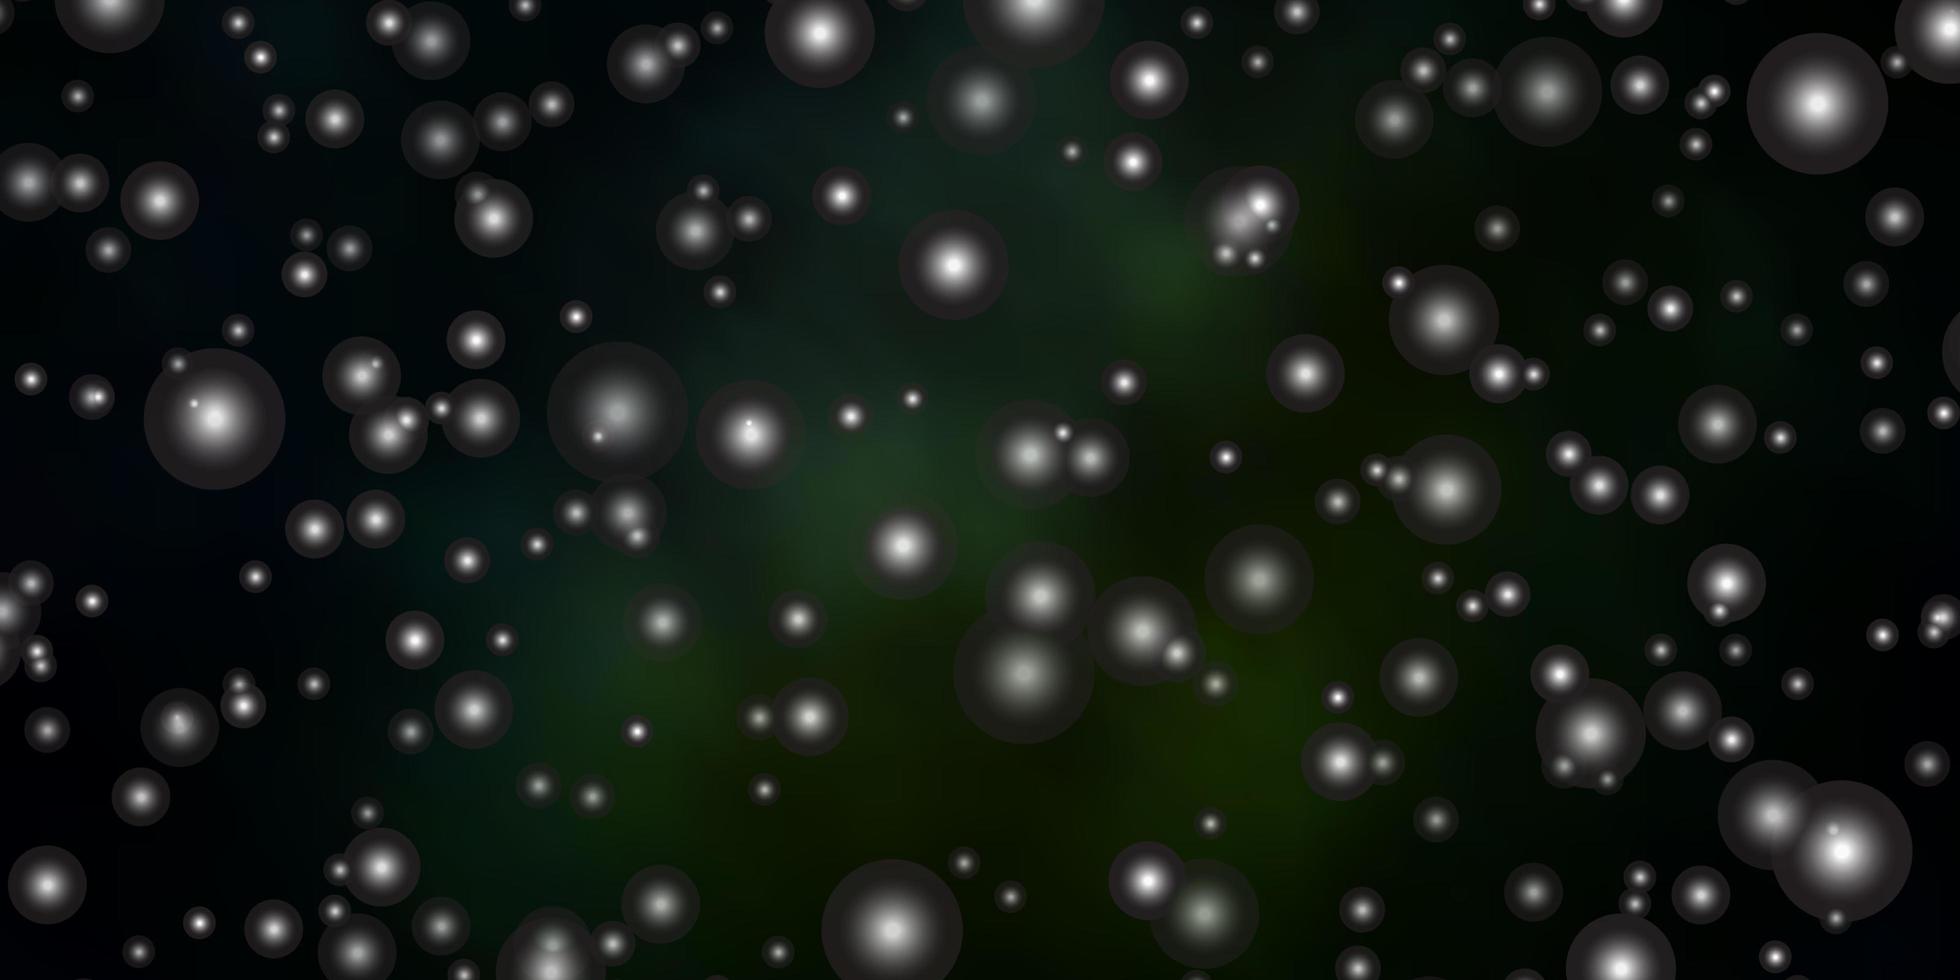 mörkgrön vektorbakgrund med färgglada stjärnor. vektor